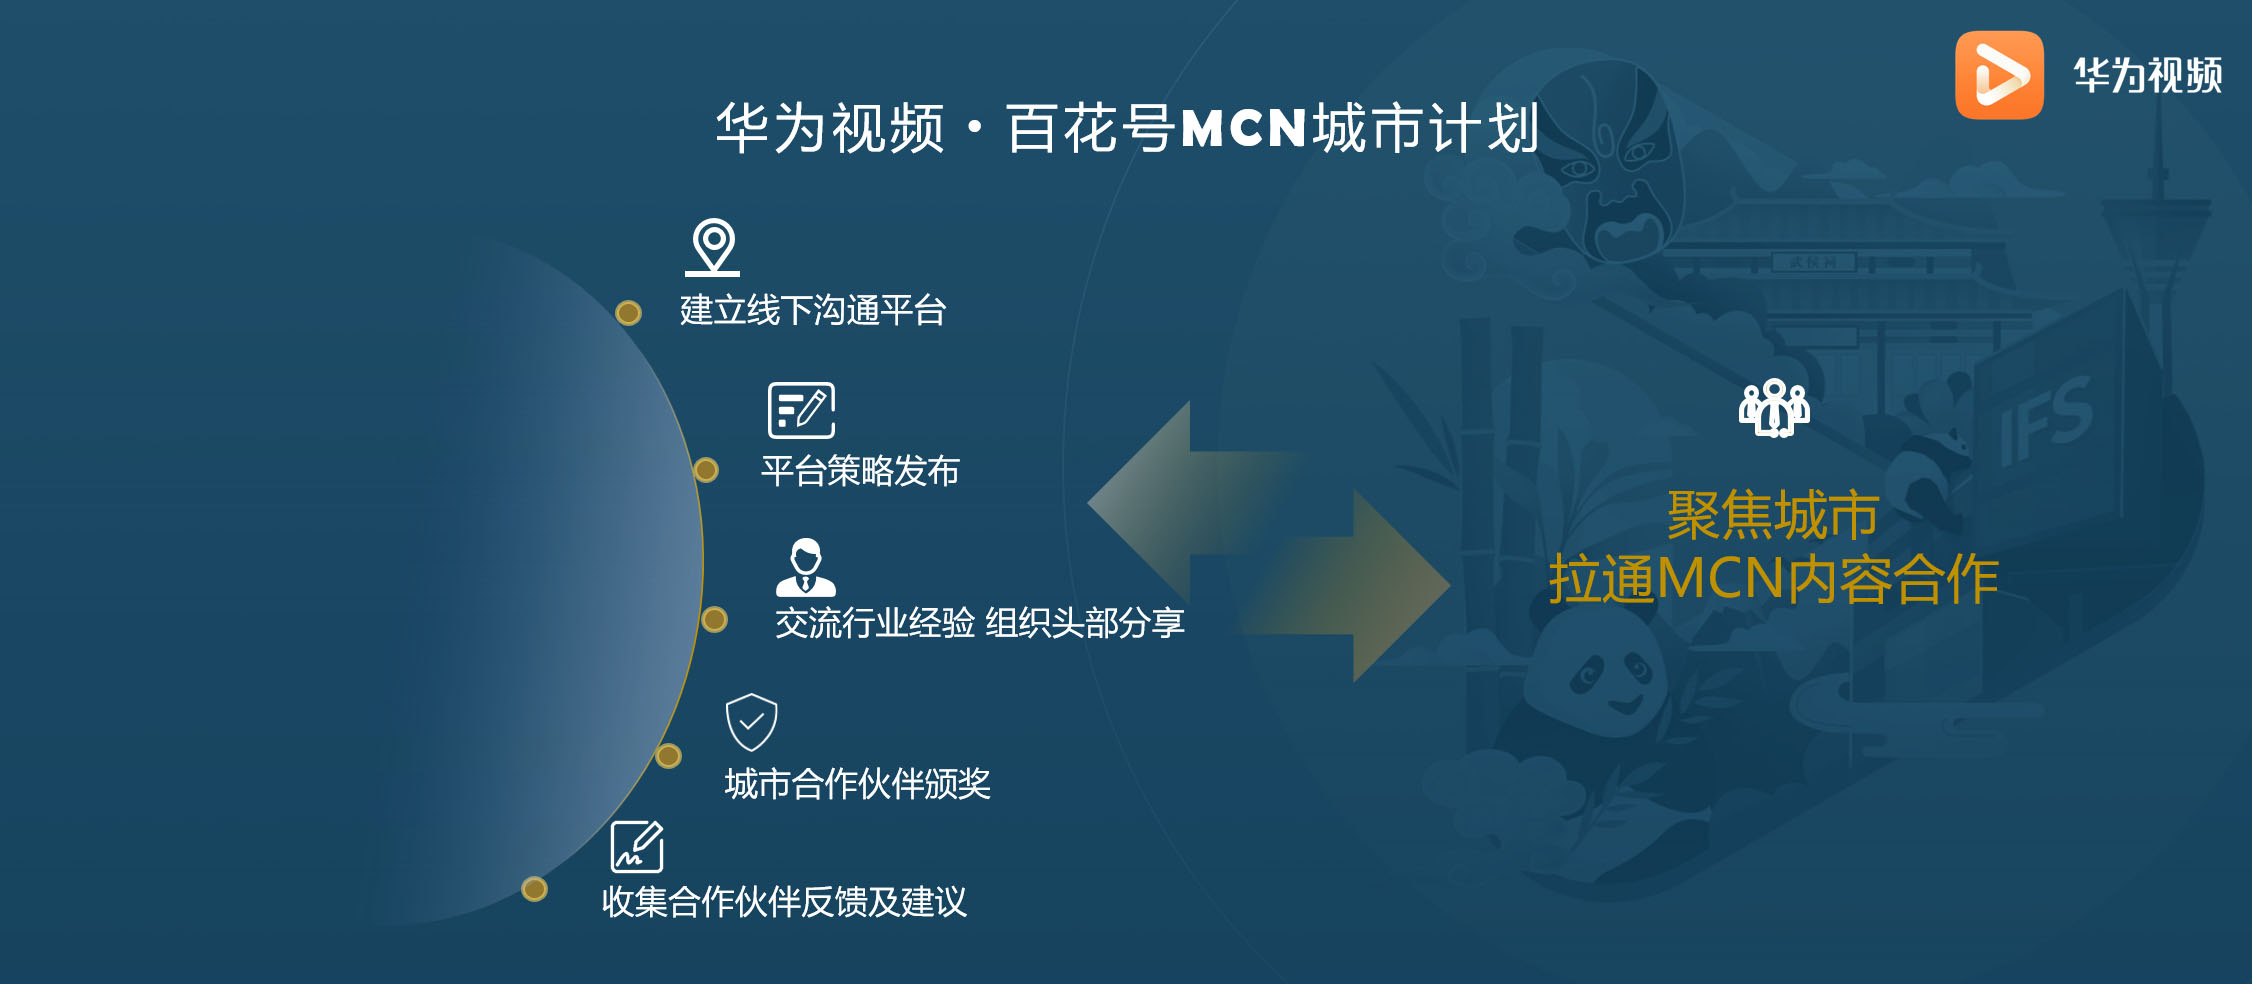 华为视频·百花号MCN城市计划首站落地成都 云集众多优质内容创作者